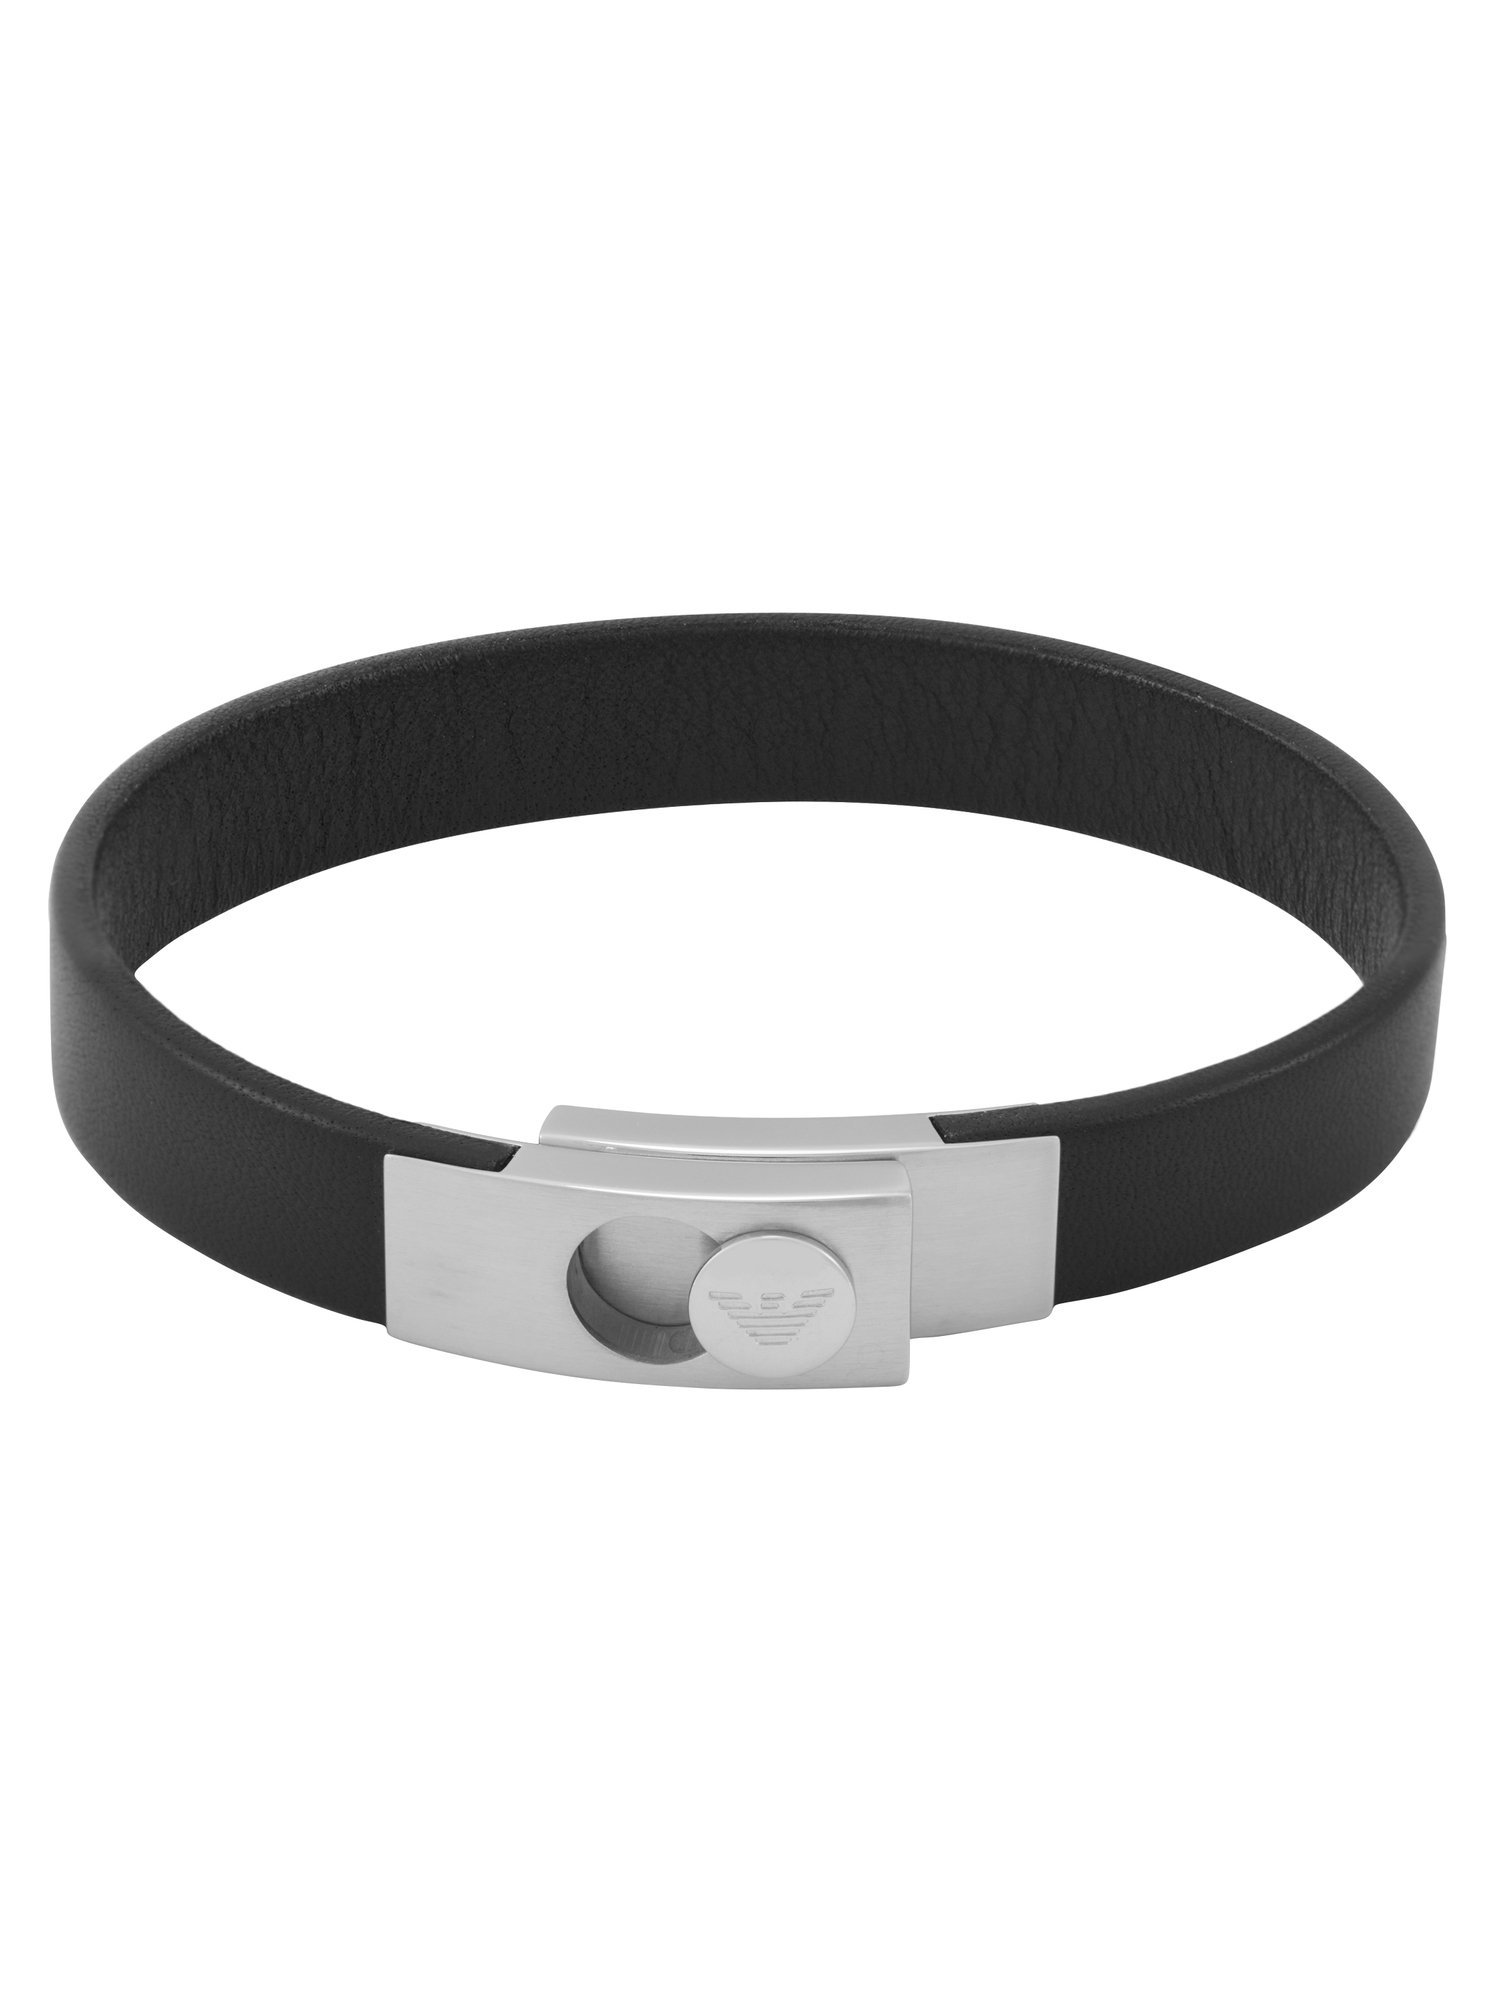 EMPORIO ARMANI Black Bracelet EGS3087040 ウォッチステーションインターナショナル アクセサリー 腕時計 ブレスレット バングル ブラック【送料無料】